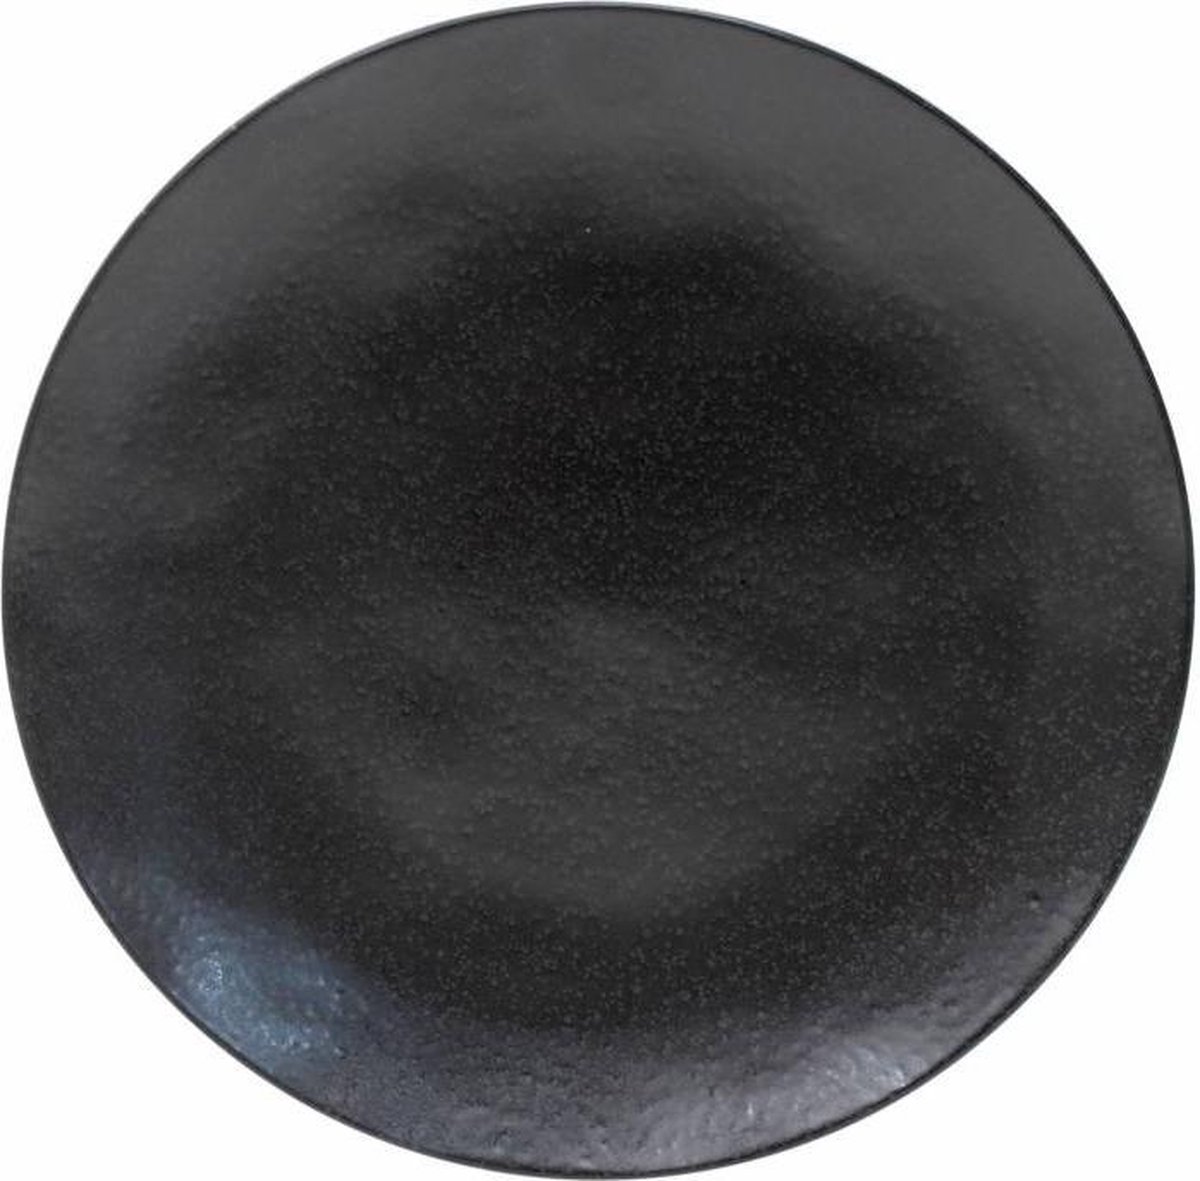 Costa Nova Riviera - servies - onderbord Sable Noir - aardewerk - mat zwart - 30,9 cm rond